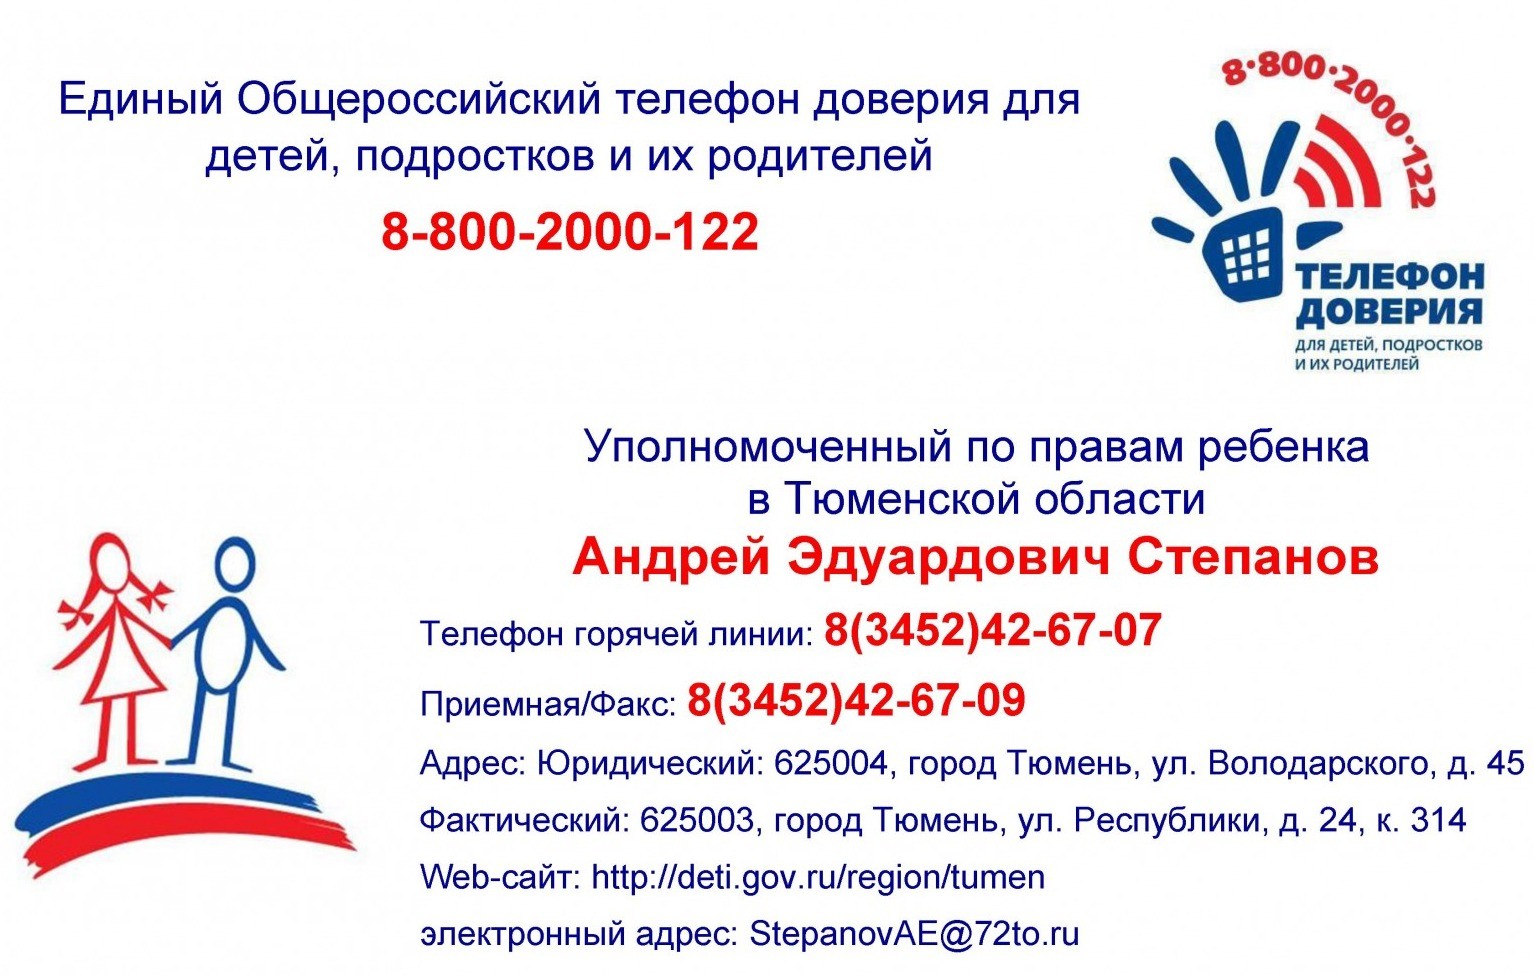 Телефон доверия губернатора. Уполномоченный по правам ребенка в Тюменской области. Горячая линия уполномоченного по правам ребенка. Уполномоченный по правам ребенка.